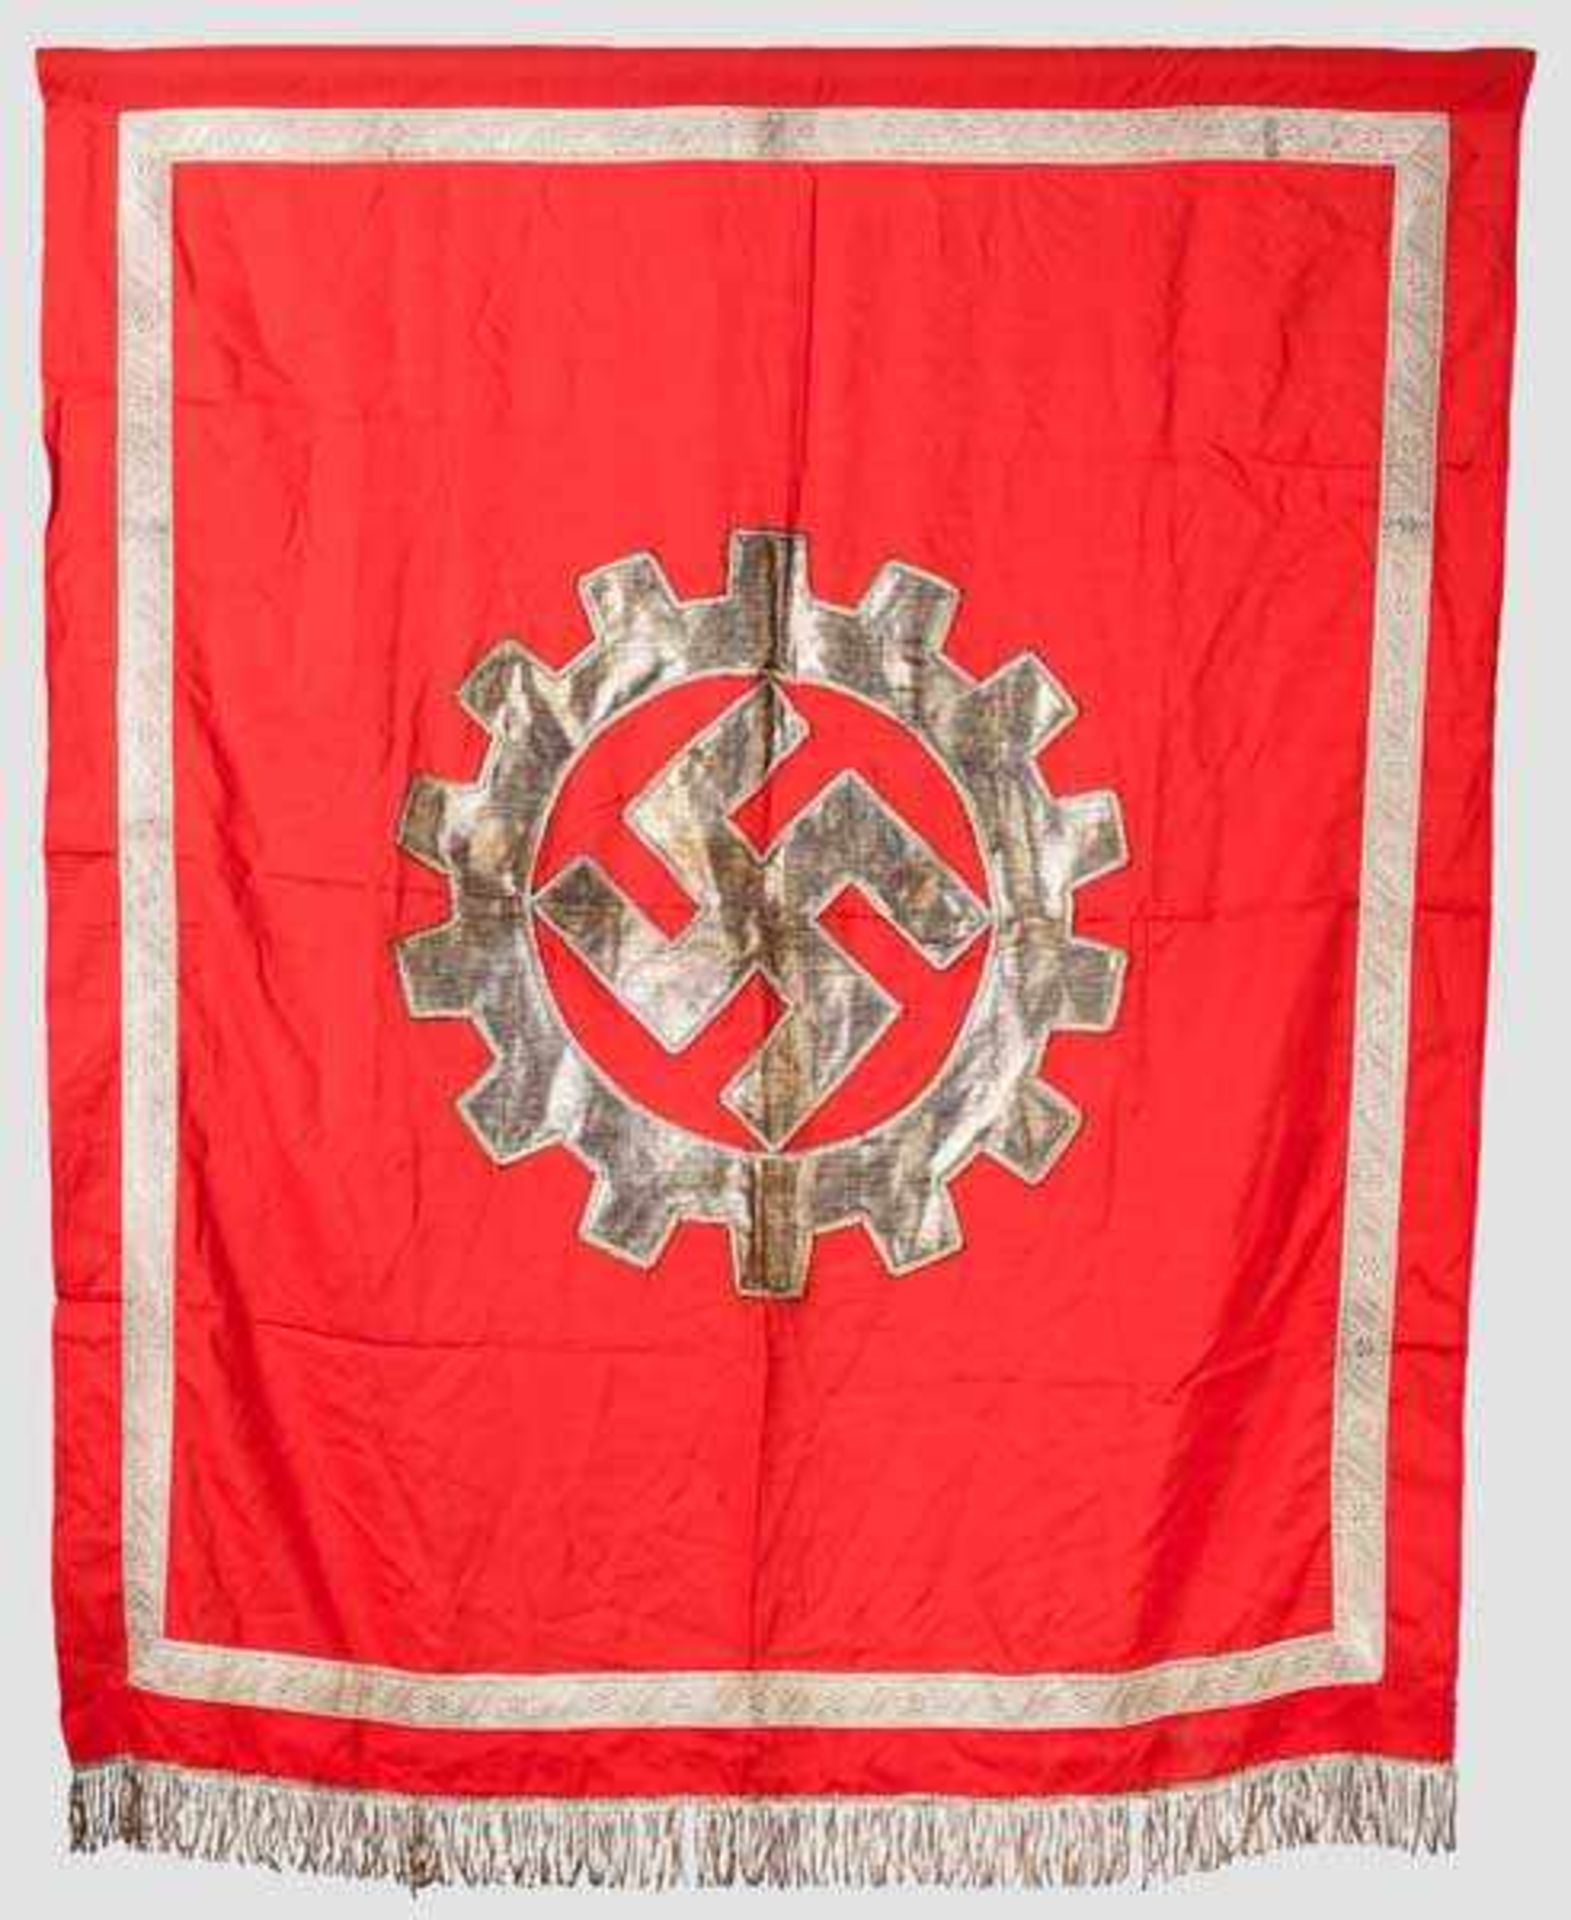 Podiumsbehang der Deutschen Arbeitsfront (DAF) Rotes Fahnentuch mit mittig aufgenähtem DAF-Emblem